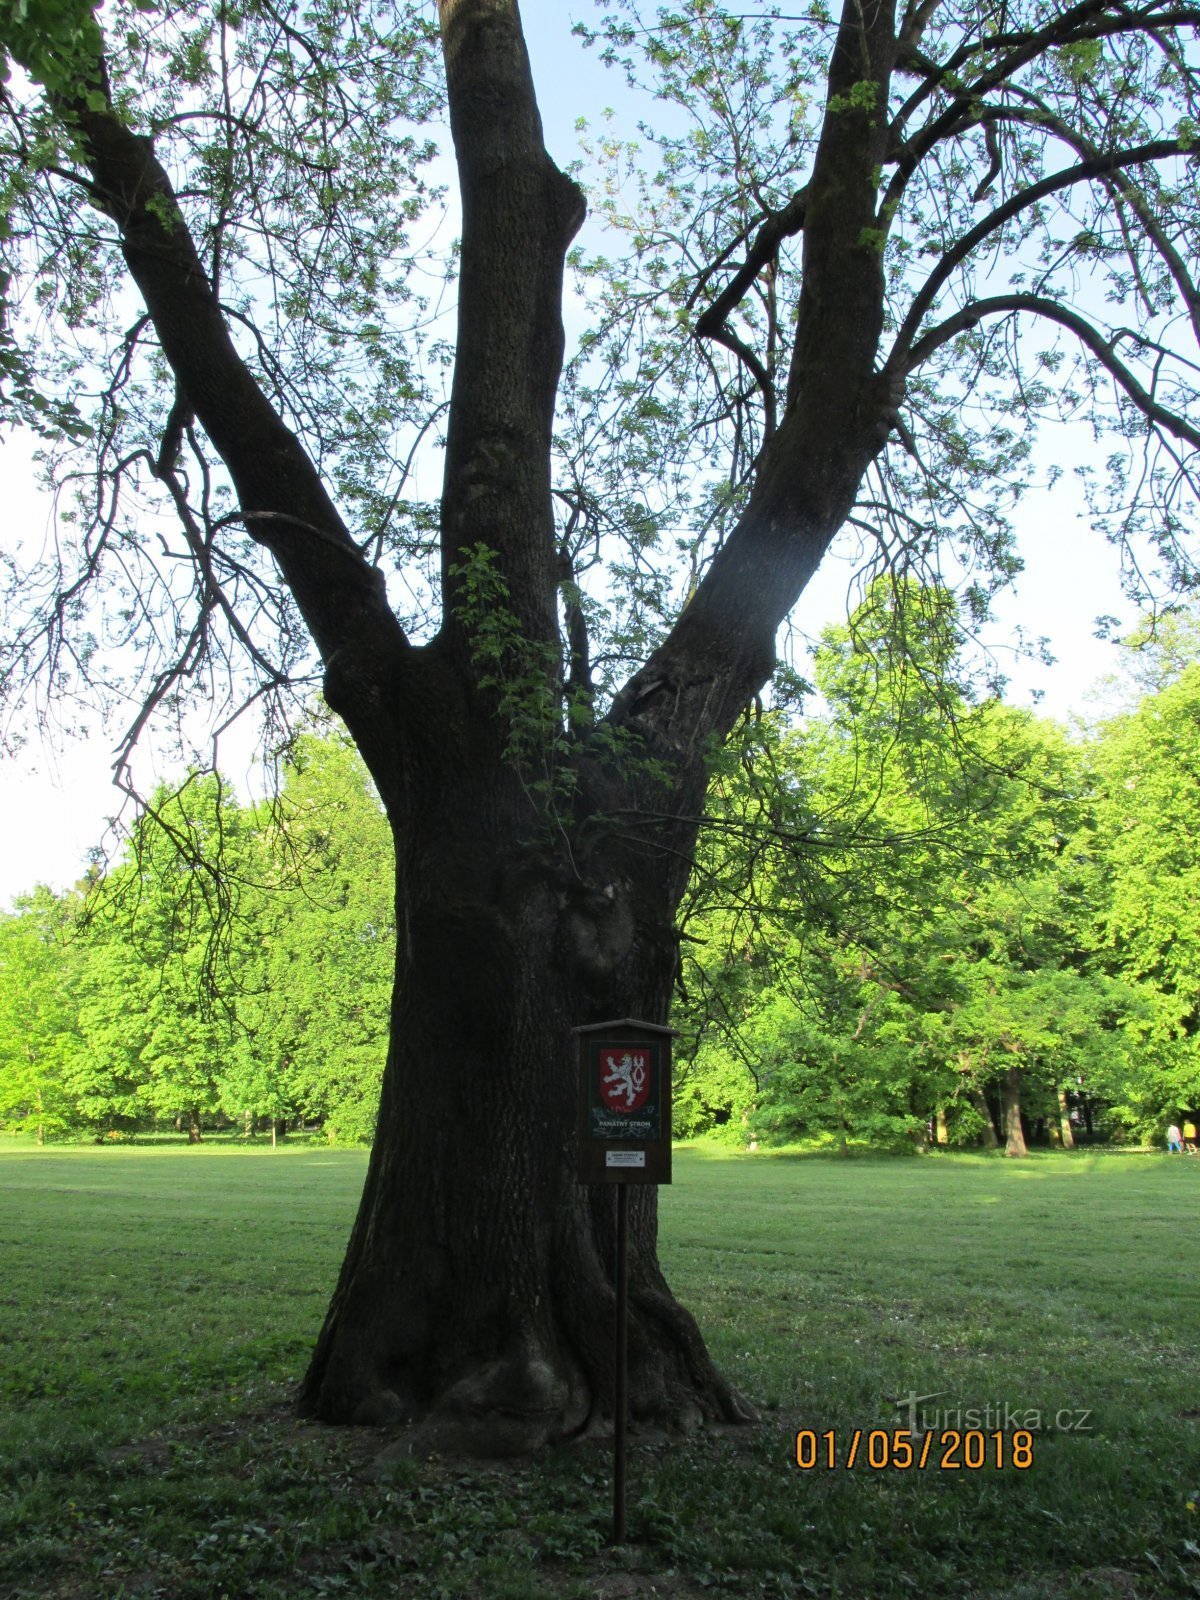 Αναμνηστικό δέντρο στο πάρκο του κάστρου Frištát